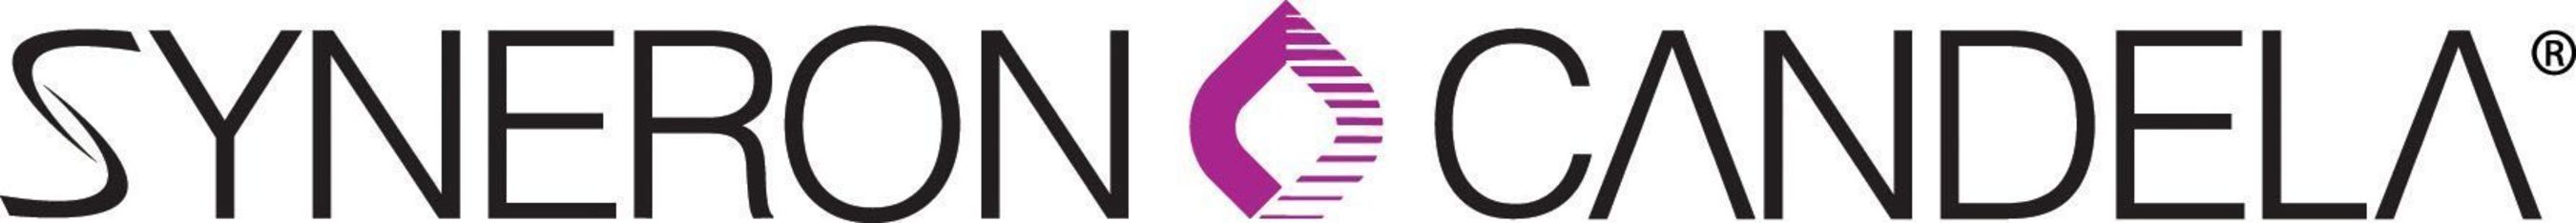 Syneron Medical Ltd logo